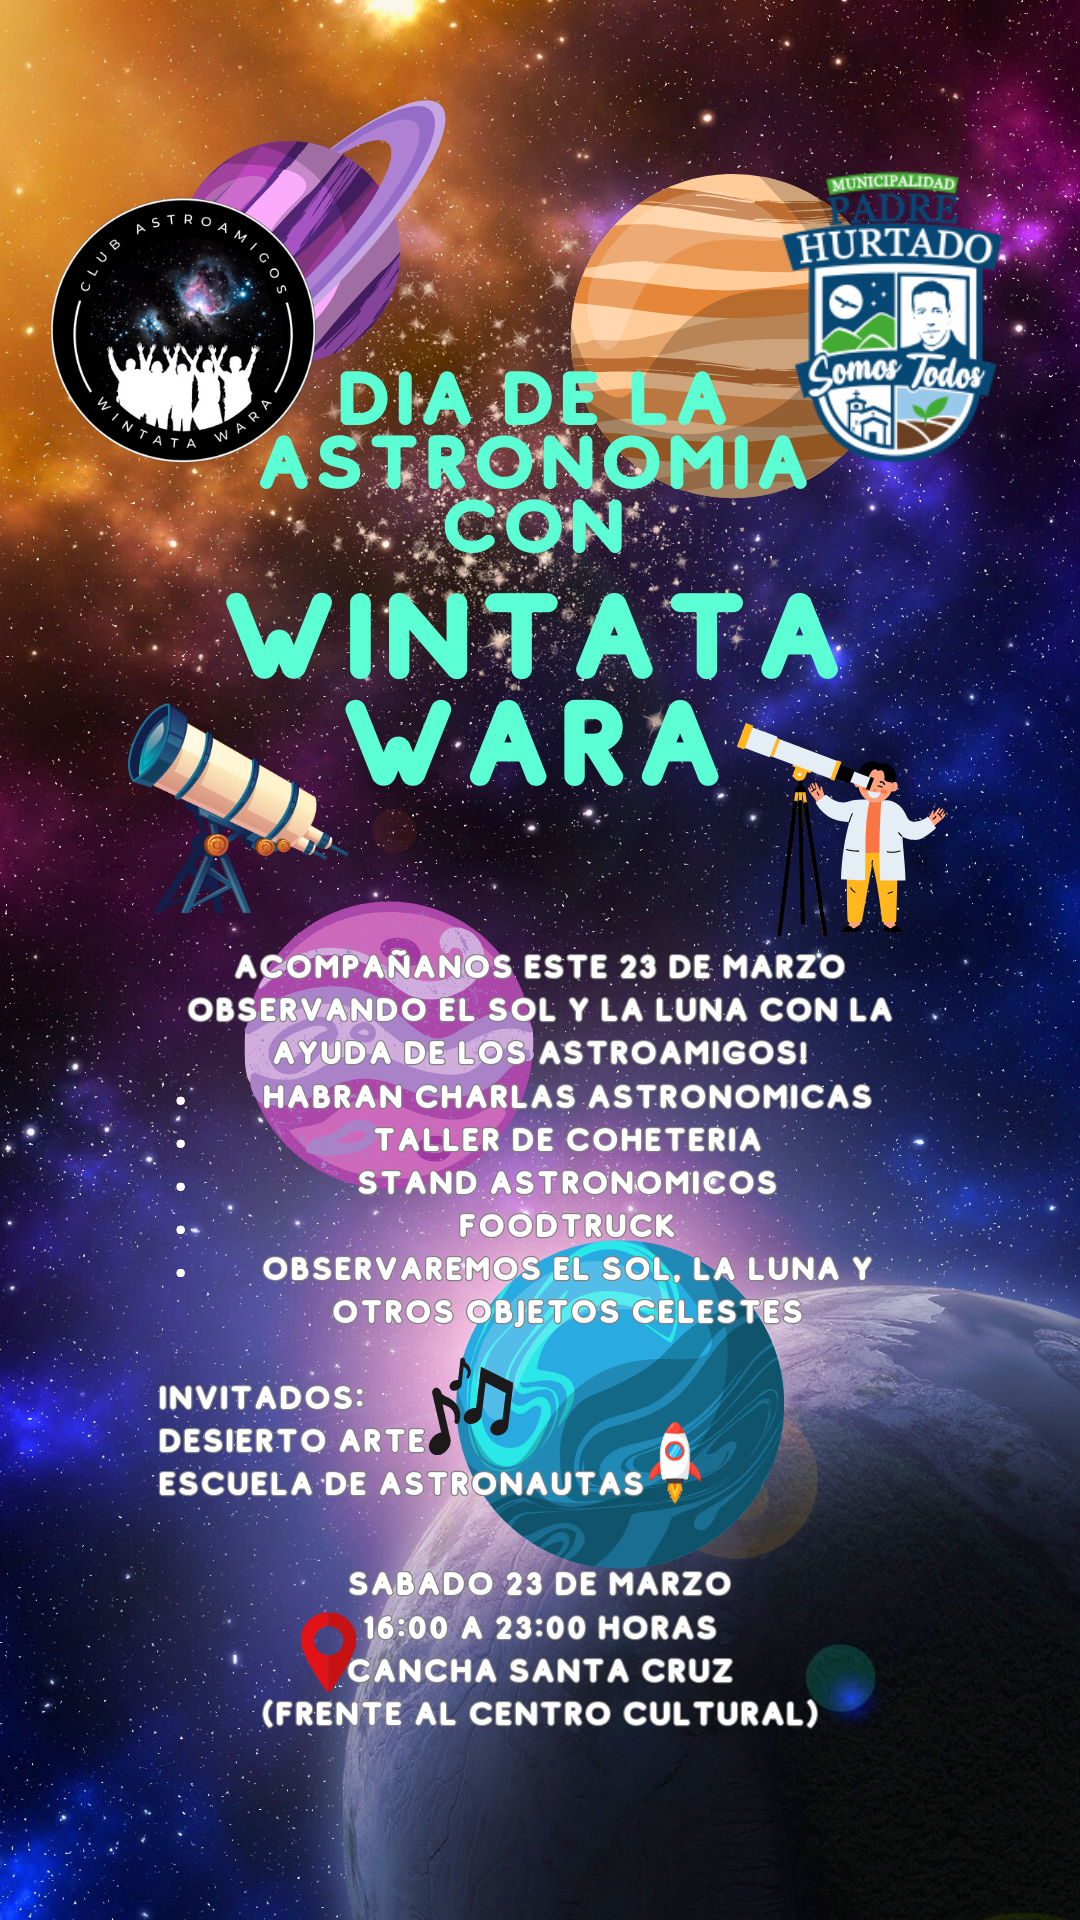 Actividad astronómica con el Club Astroamigos “Wintata Wara”